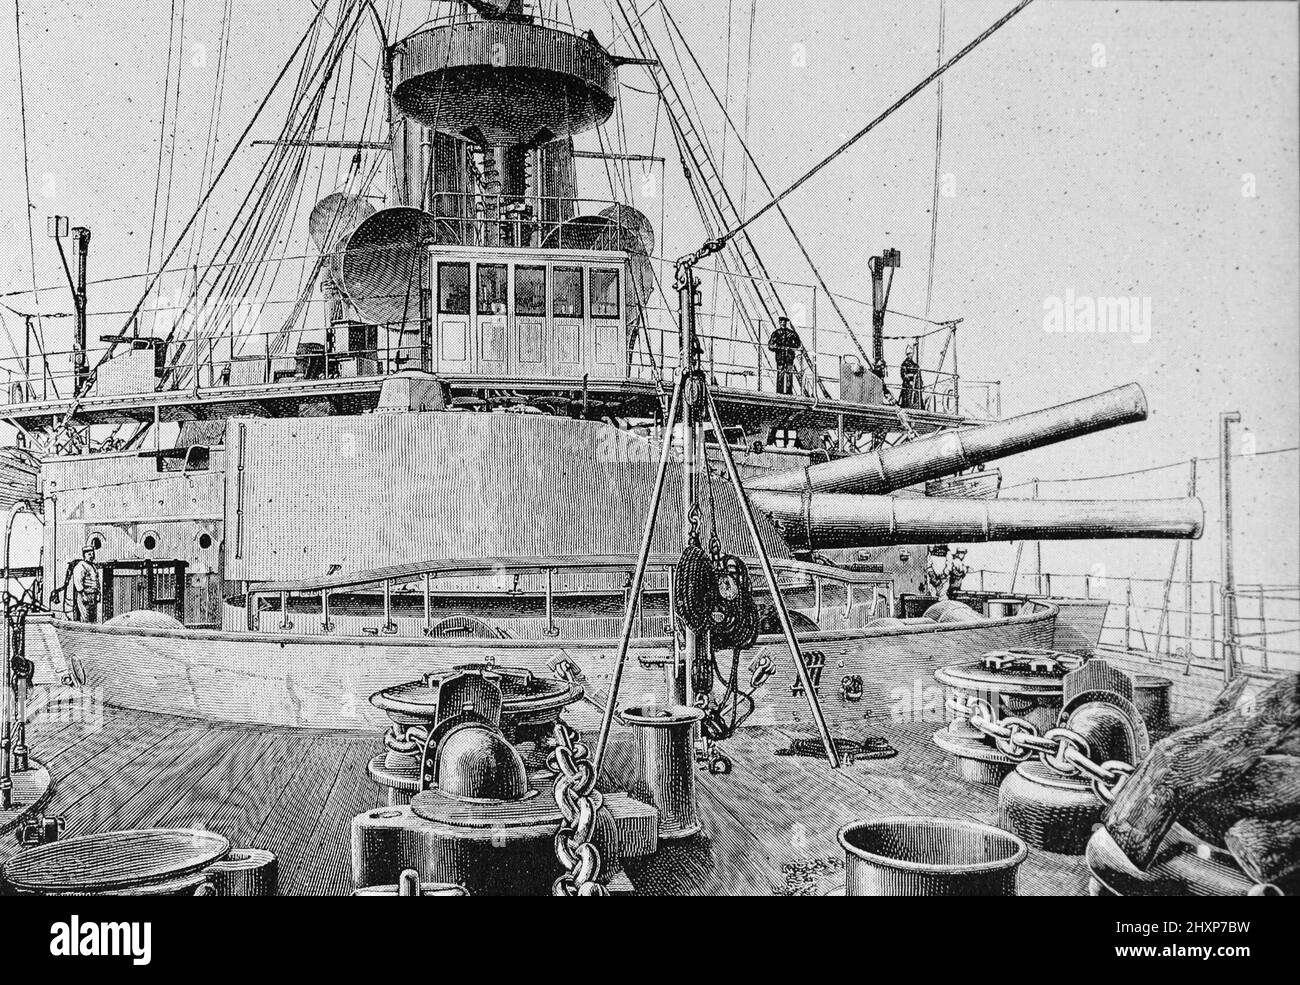 La Barbette avant du HMS Barfleur. Illustration noir et blanc vers 1890s Banque D'Images